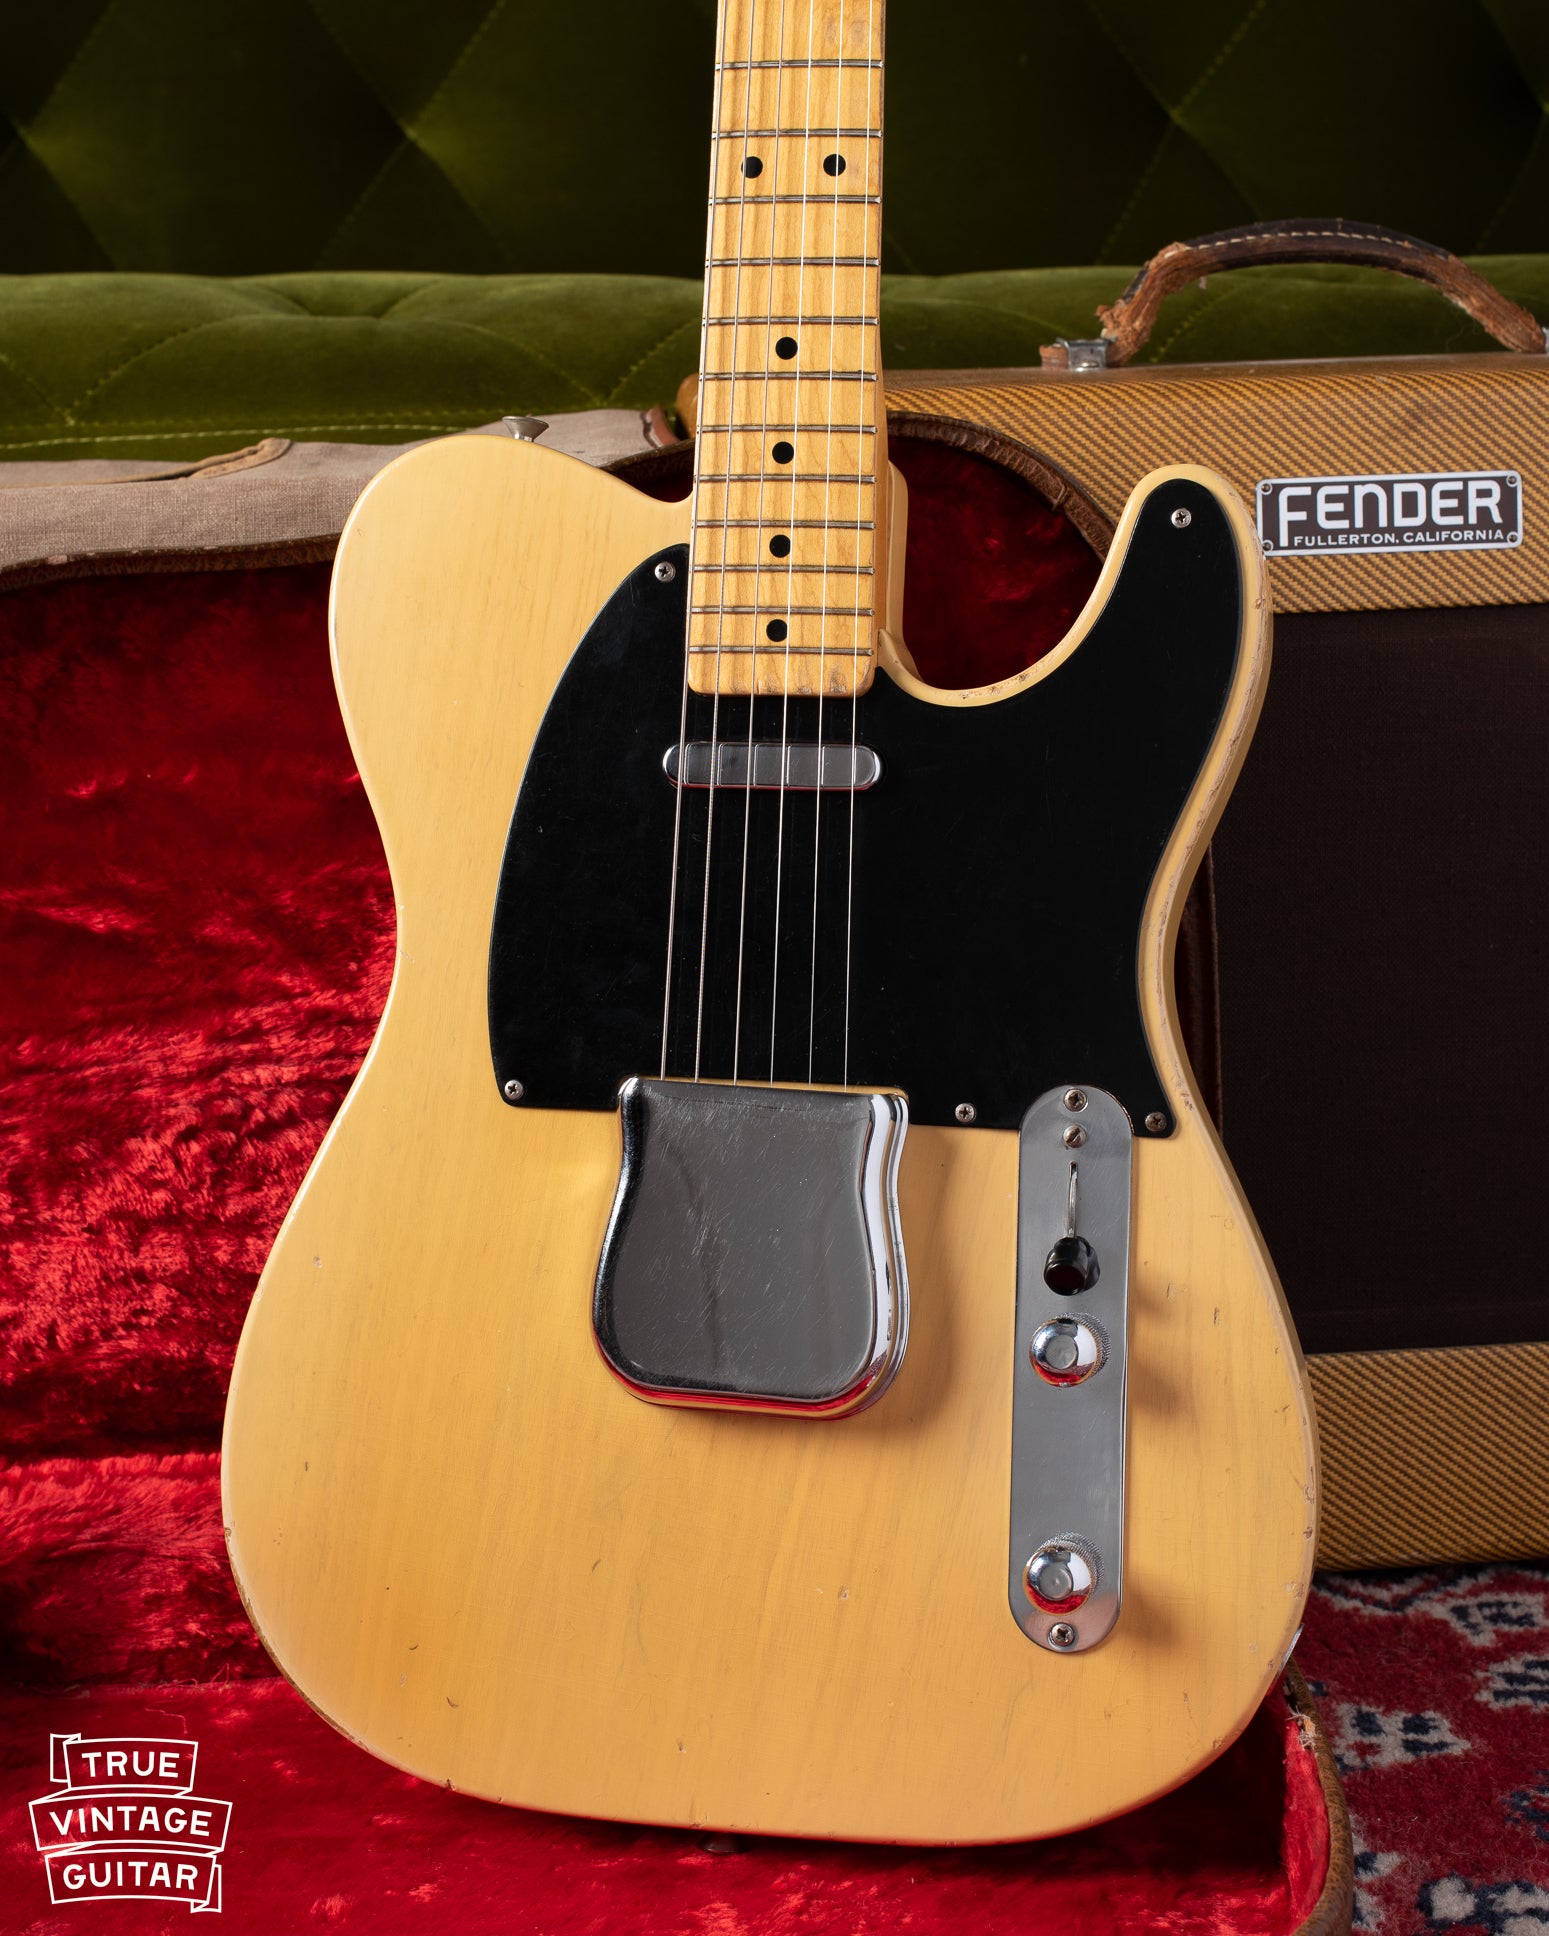 Fender Telecaster 1953 guitar with black pickguard